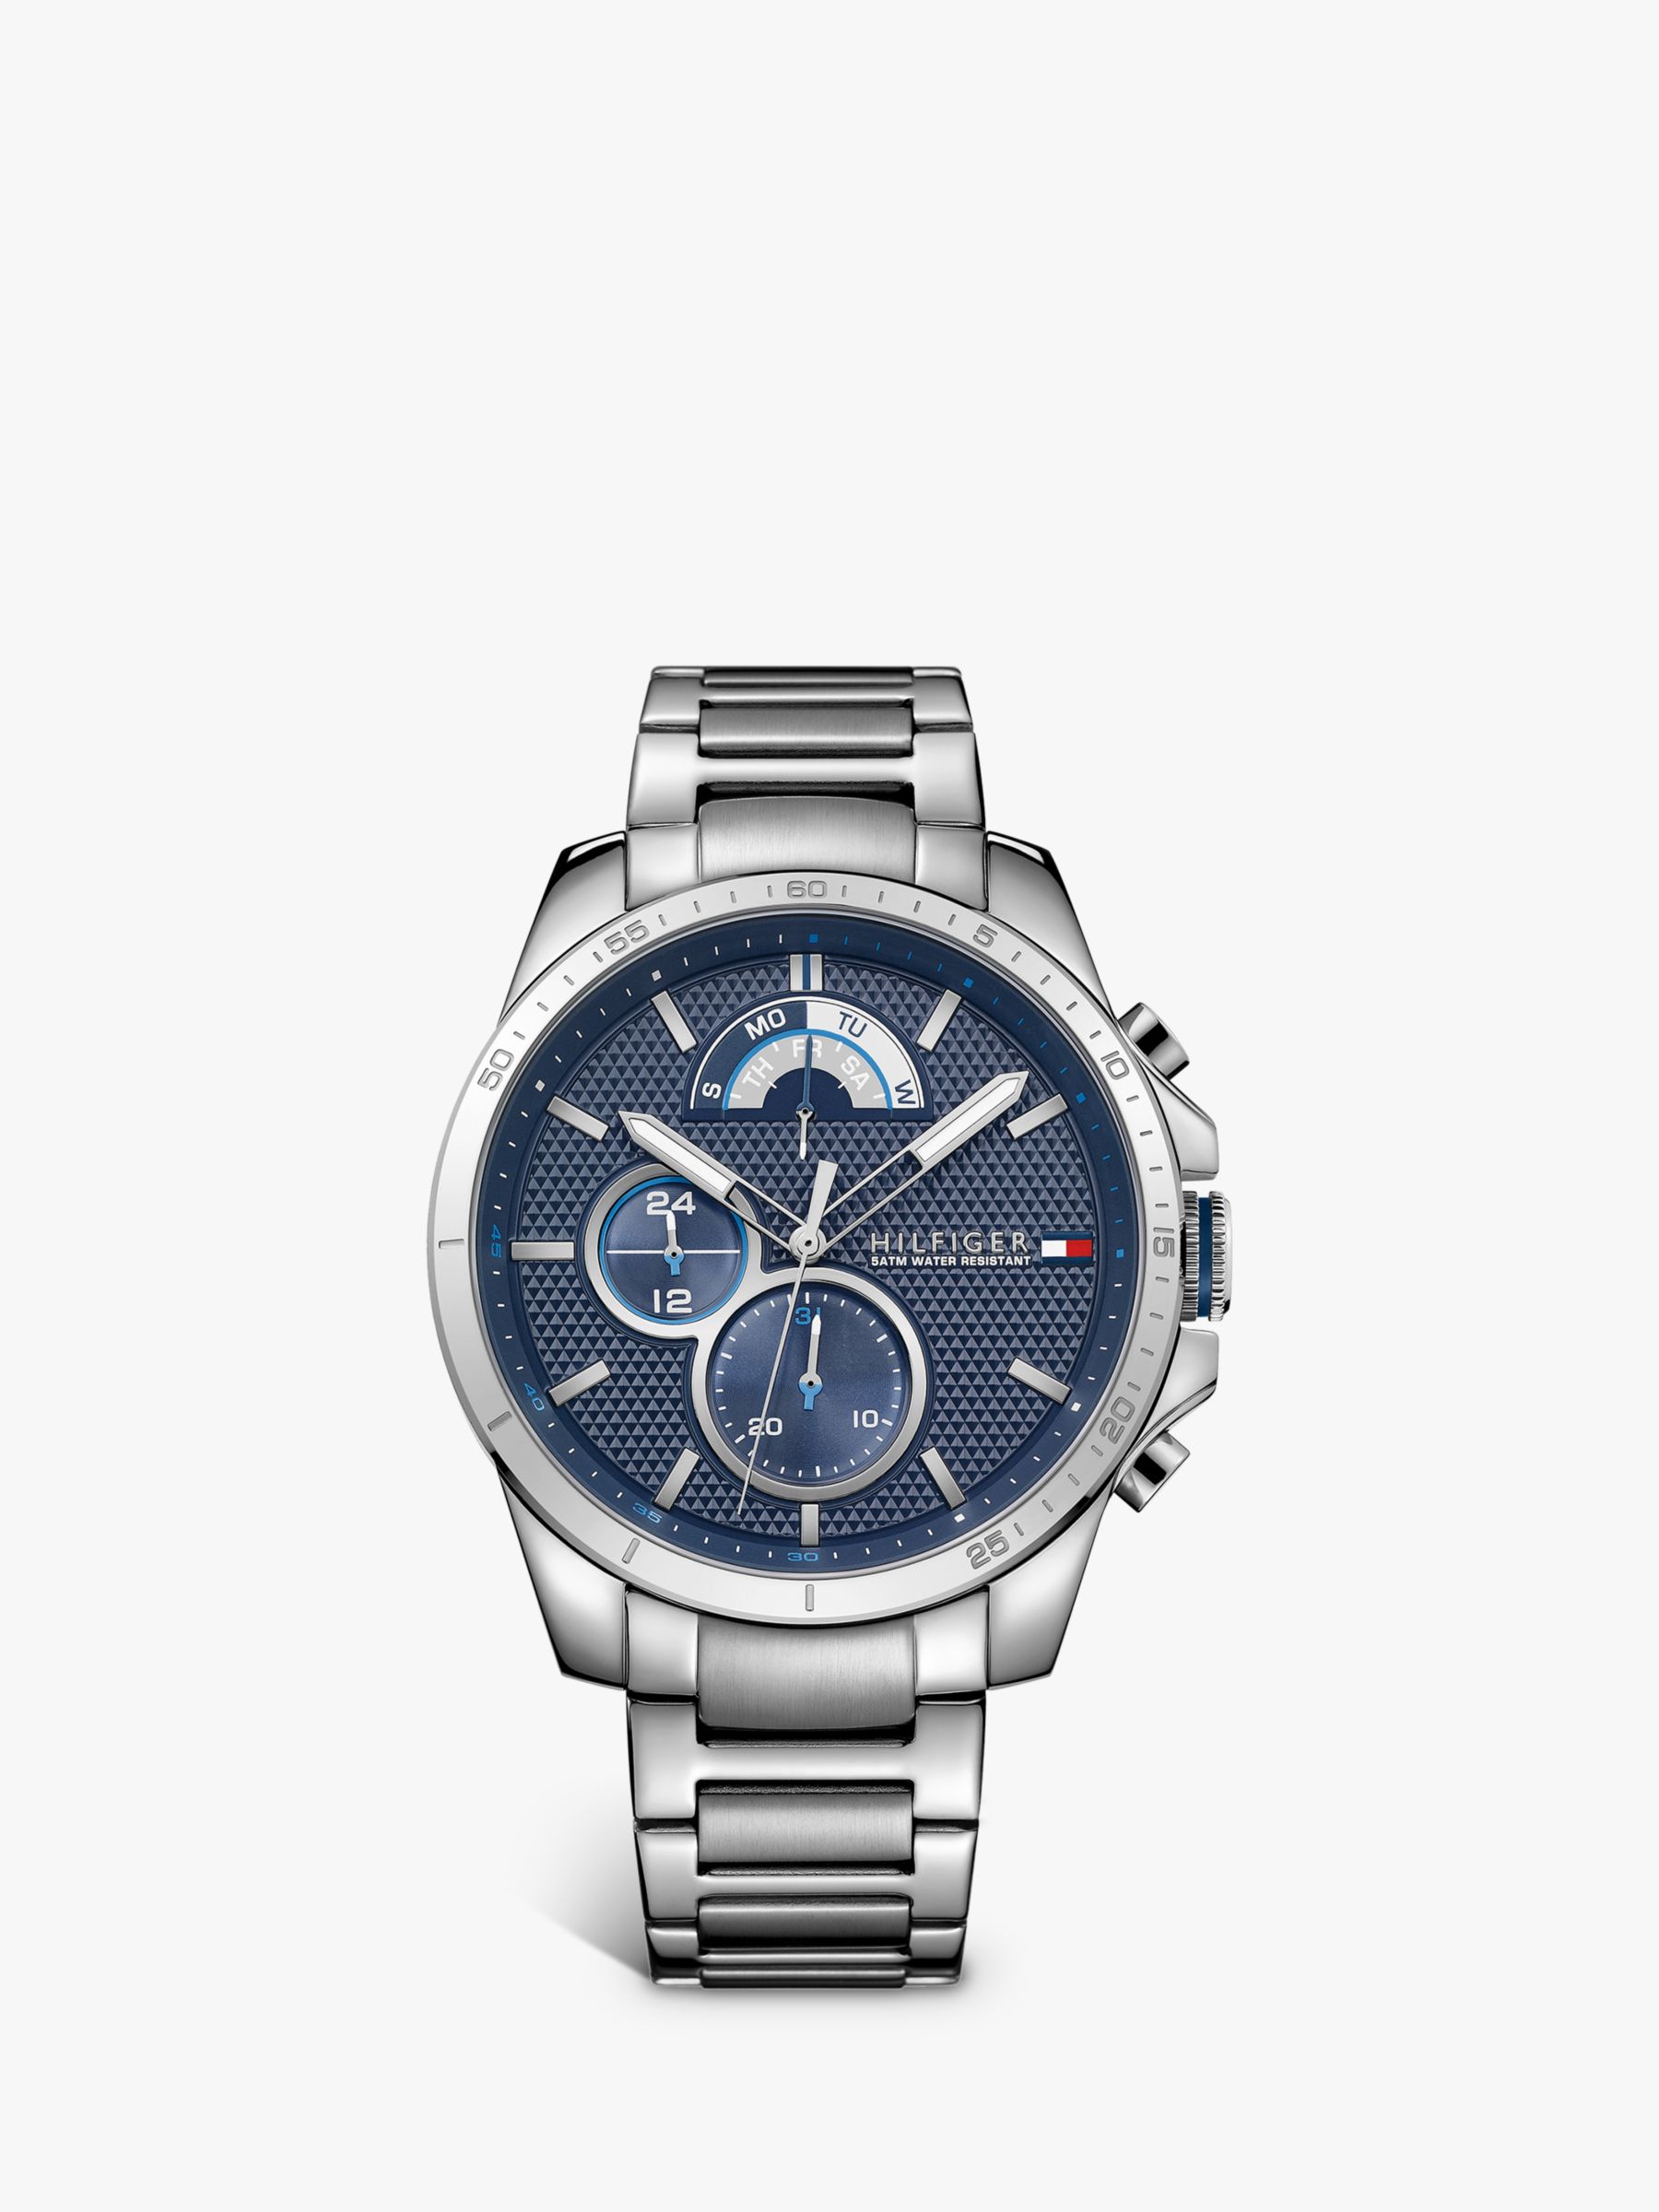 Hilfiger 1791348 Men's Chronograph Bracelet Watch, Silver/Blue at Lewis & Partners